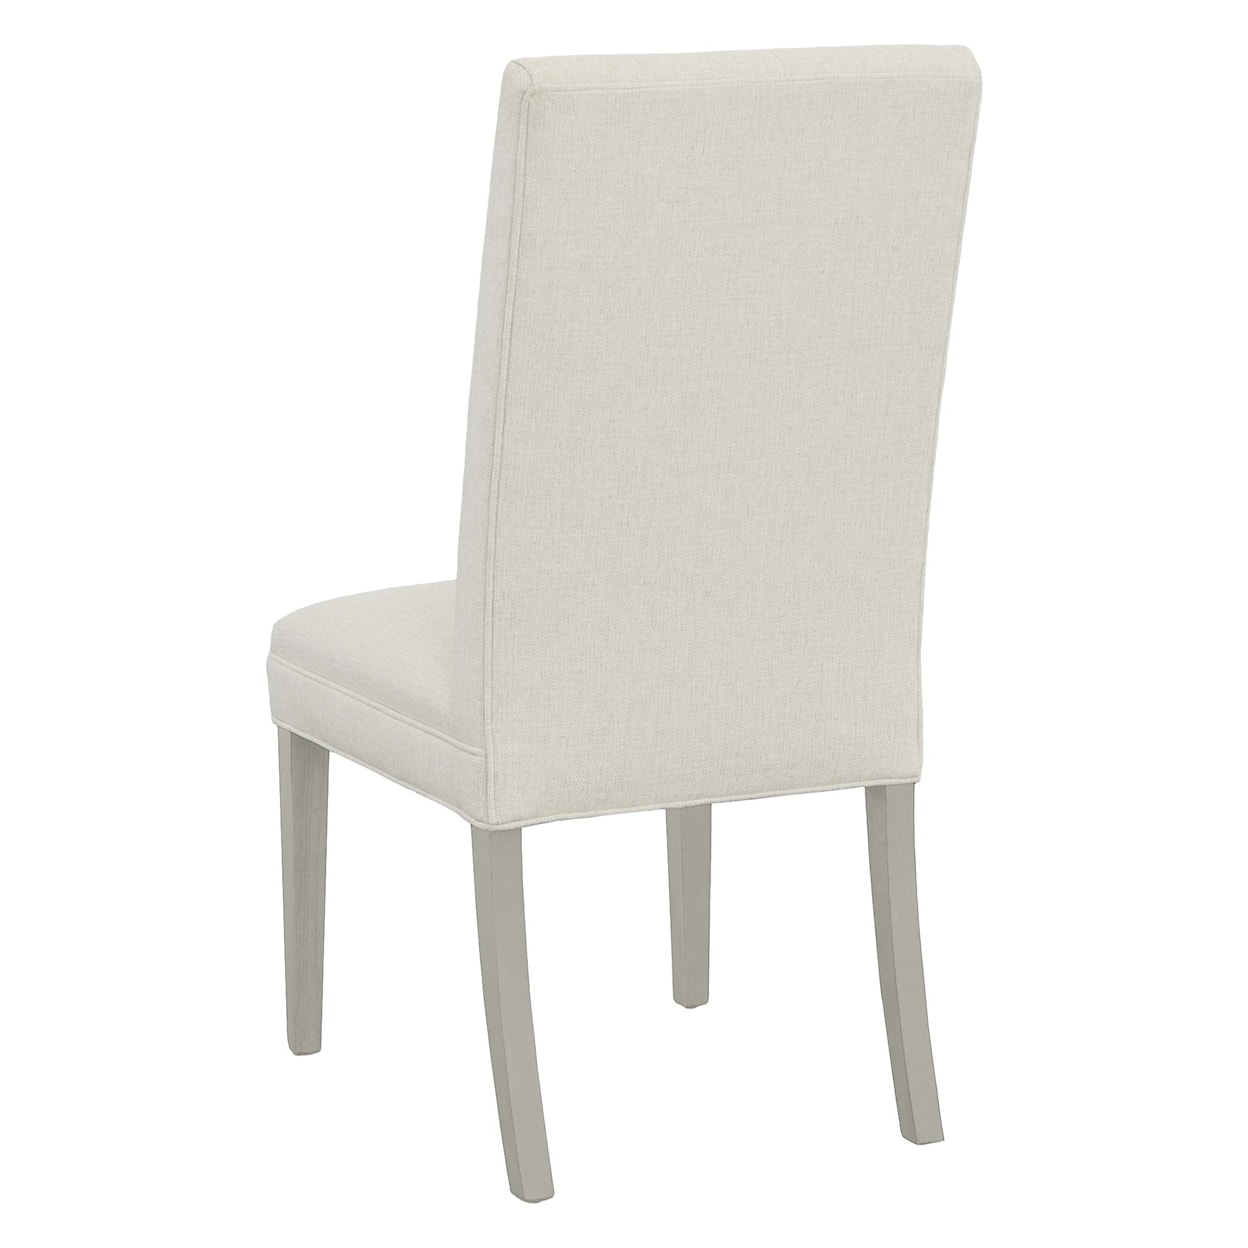 Fairfield 1214 Straight Tall Back Dining Chair